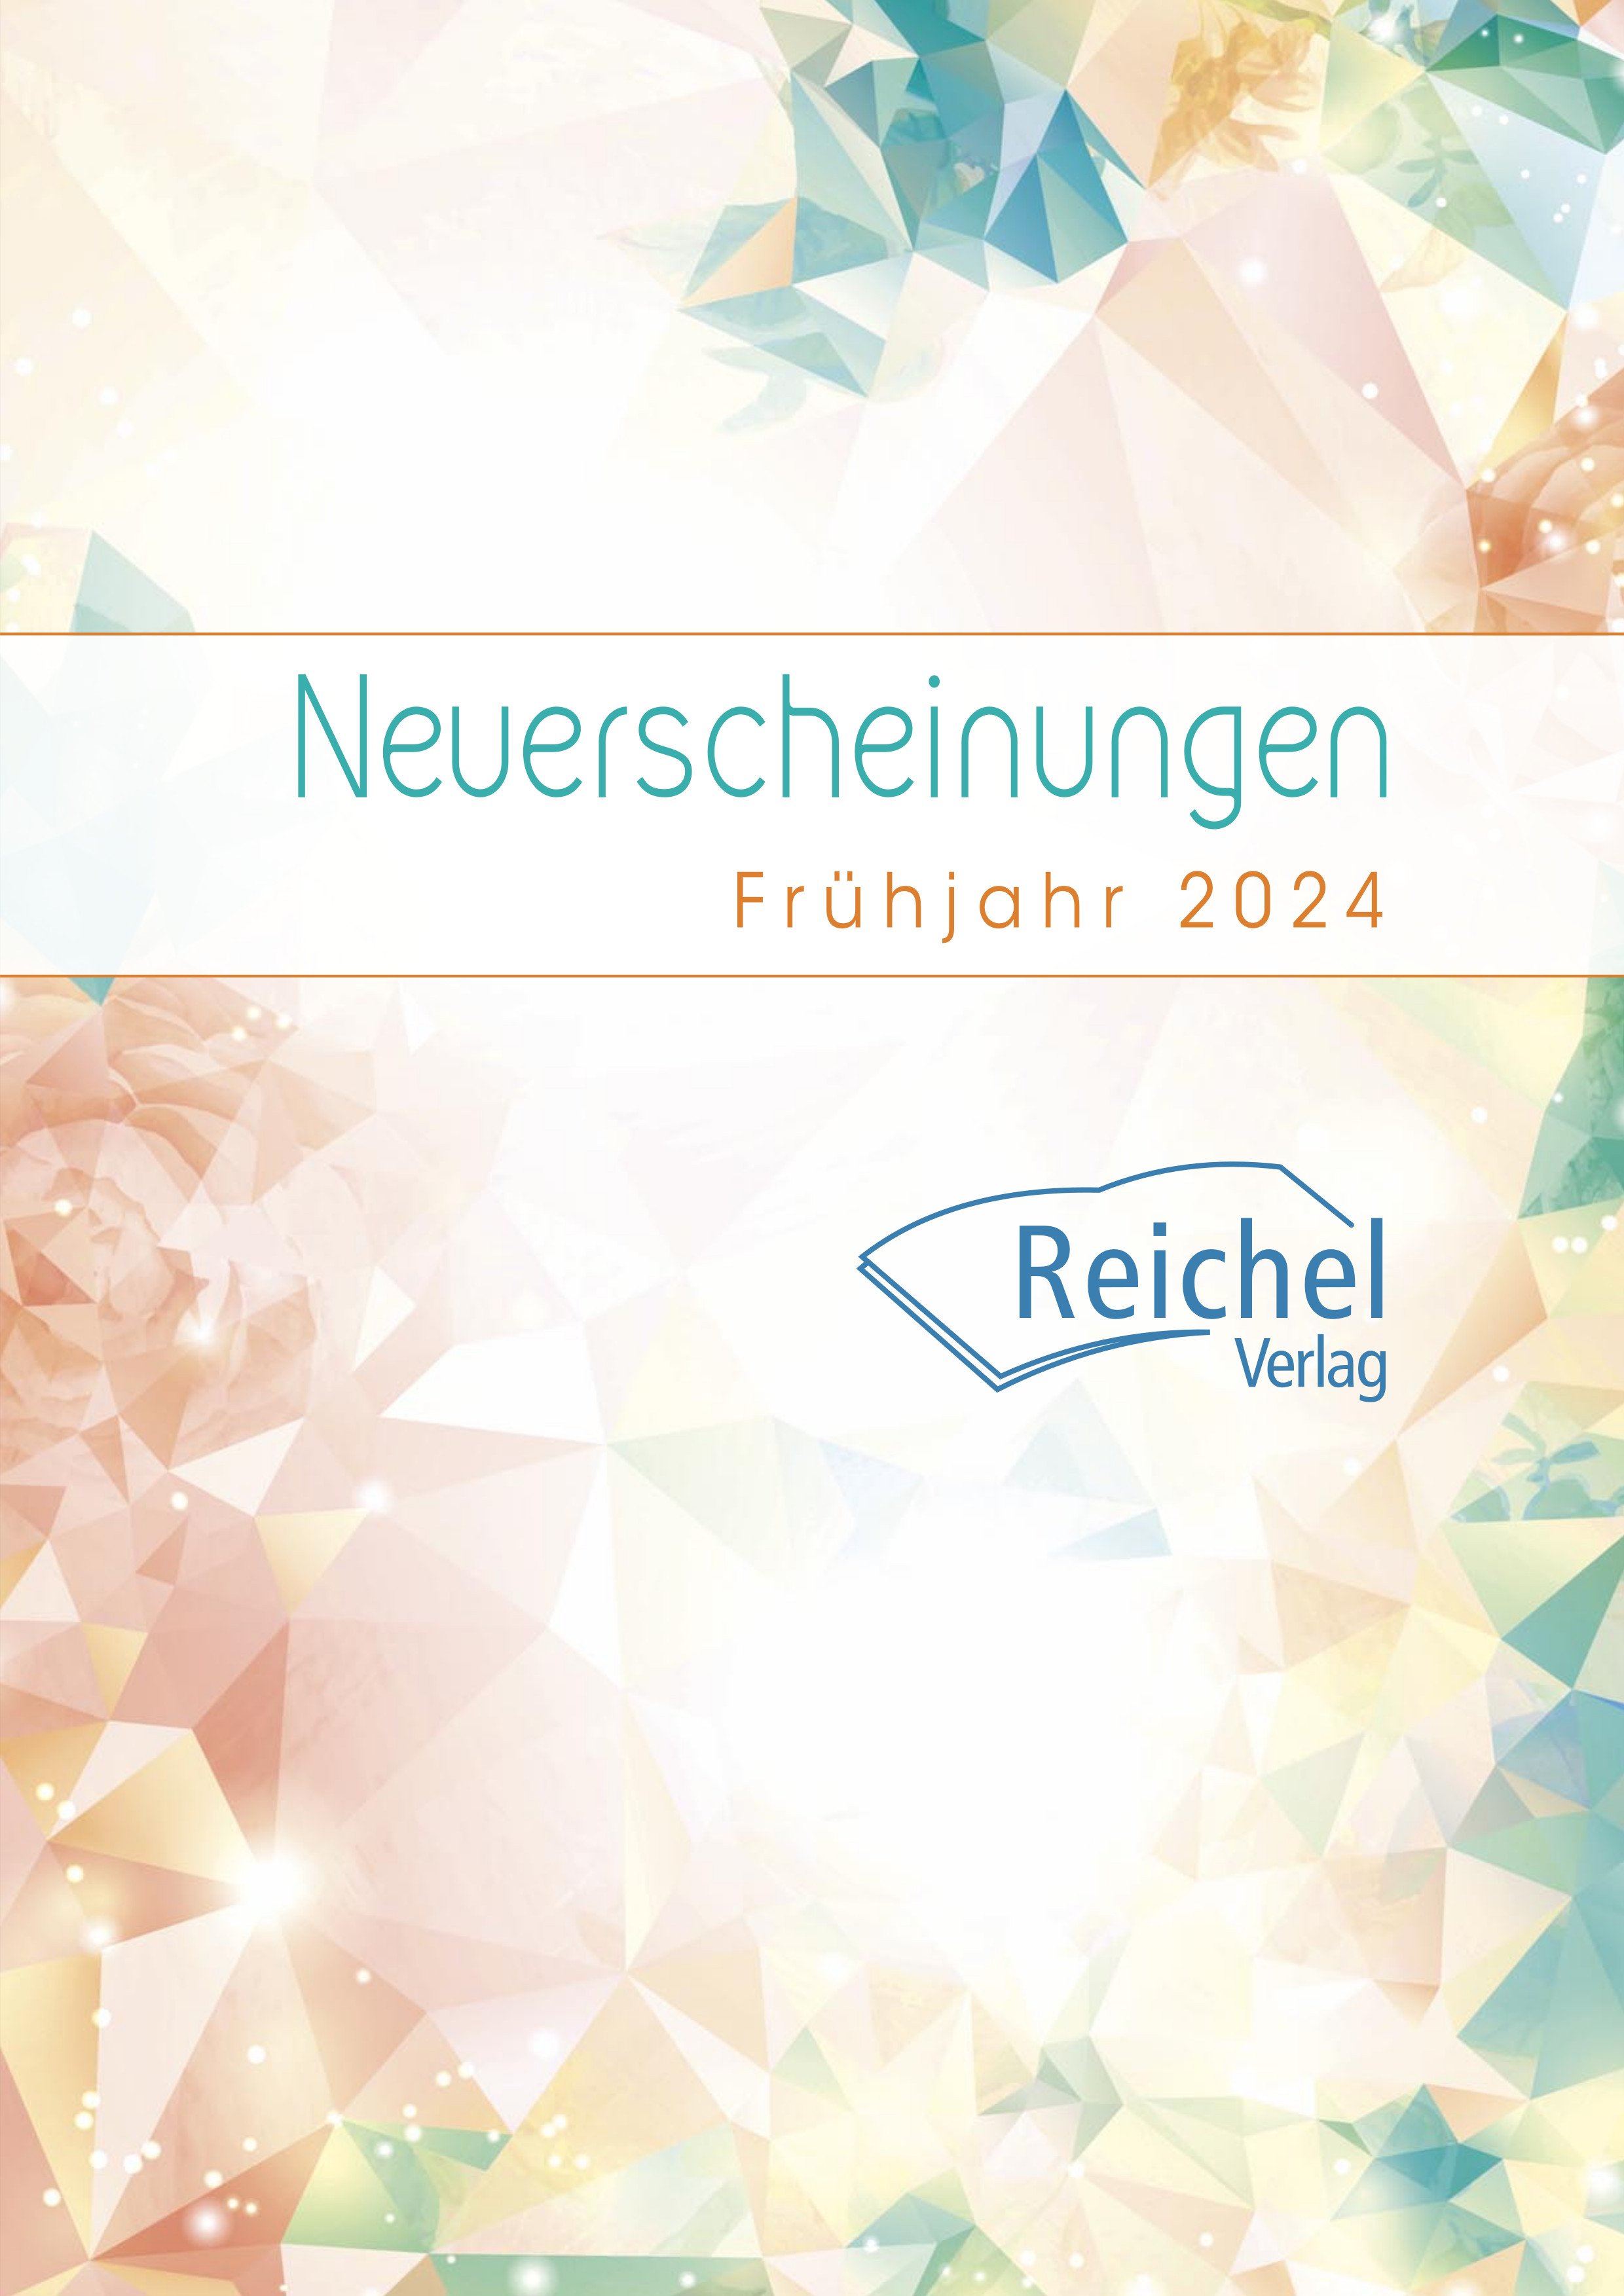 Vorschau des Reichel Verlags für Frühjahr 2024